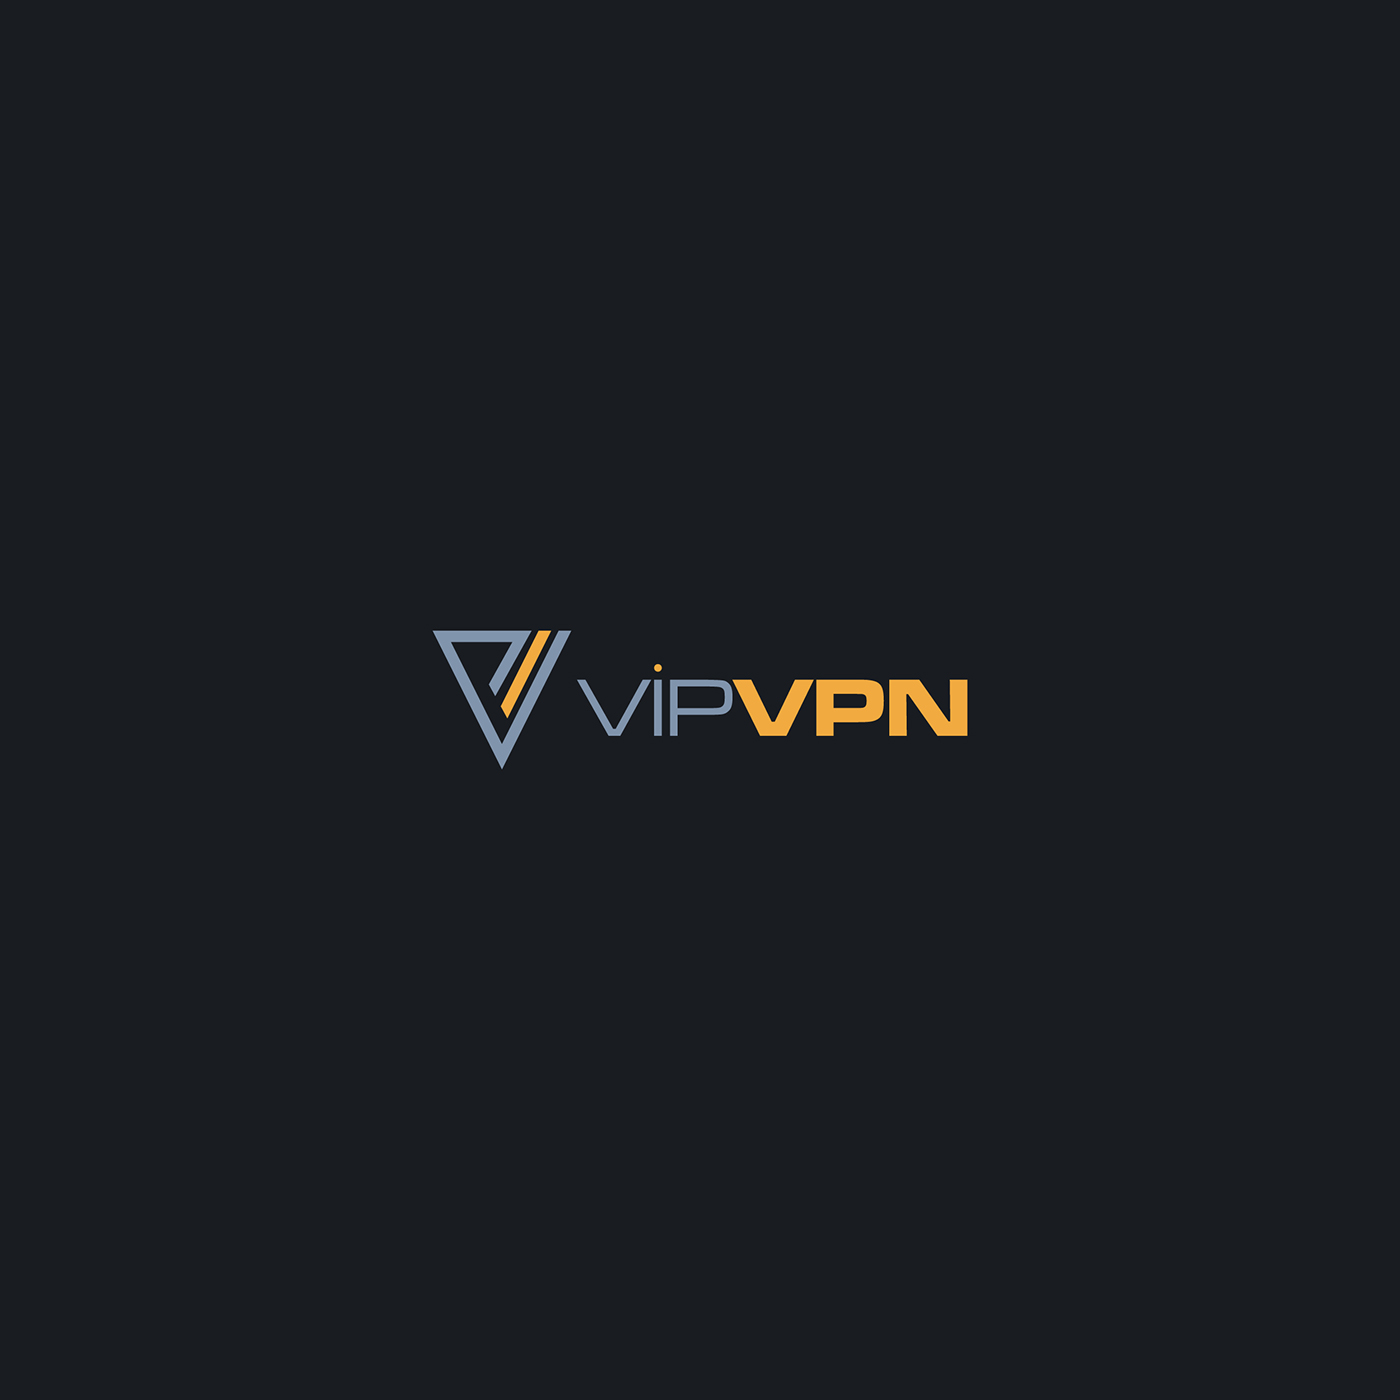 logo brand logodesign companylogo Business Logo Vip vpn industrial tech